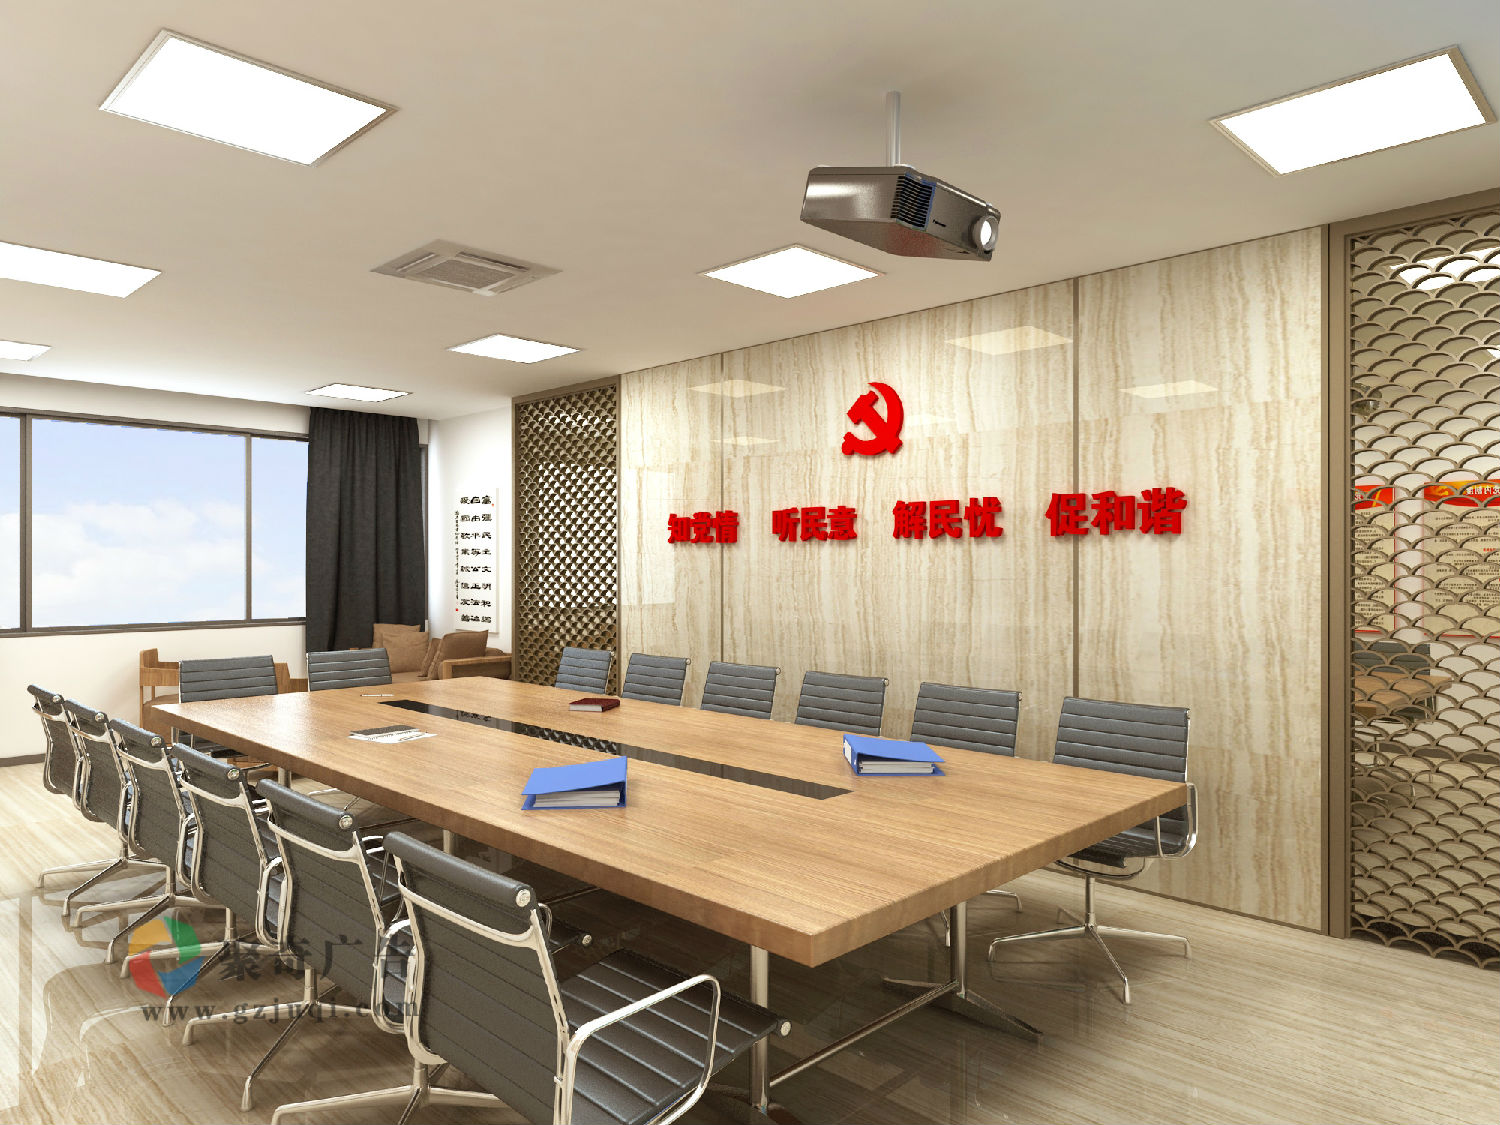 机关单位党员活动室设计_党建室建设_党建会议室设计公司-广州聚奇